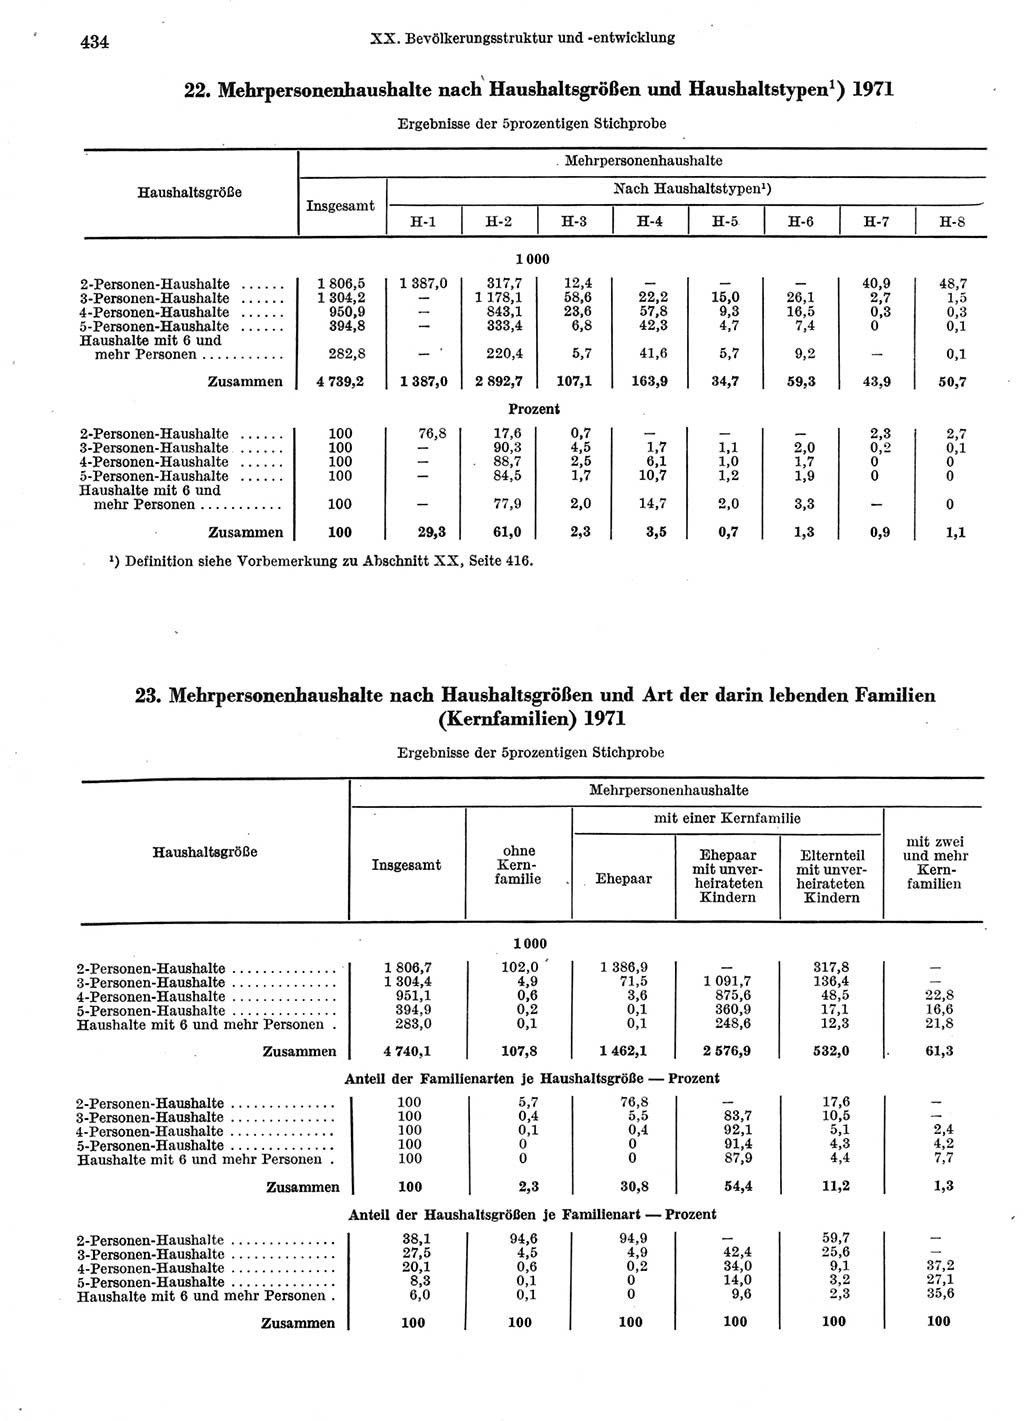 Statistisches Jahrbuch der Deutschen Demokratischen Republik (DDR) 1974, Seite 434 (Stat. Jb. DDR 1974, S. 434)